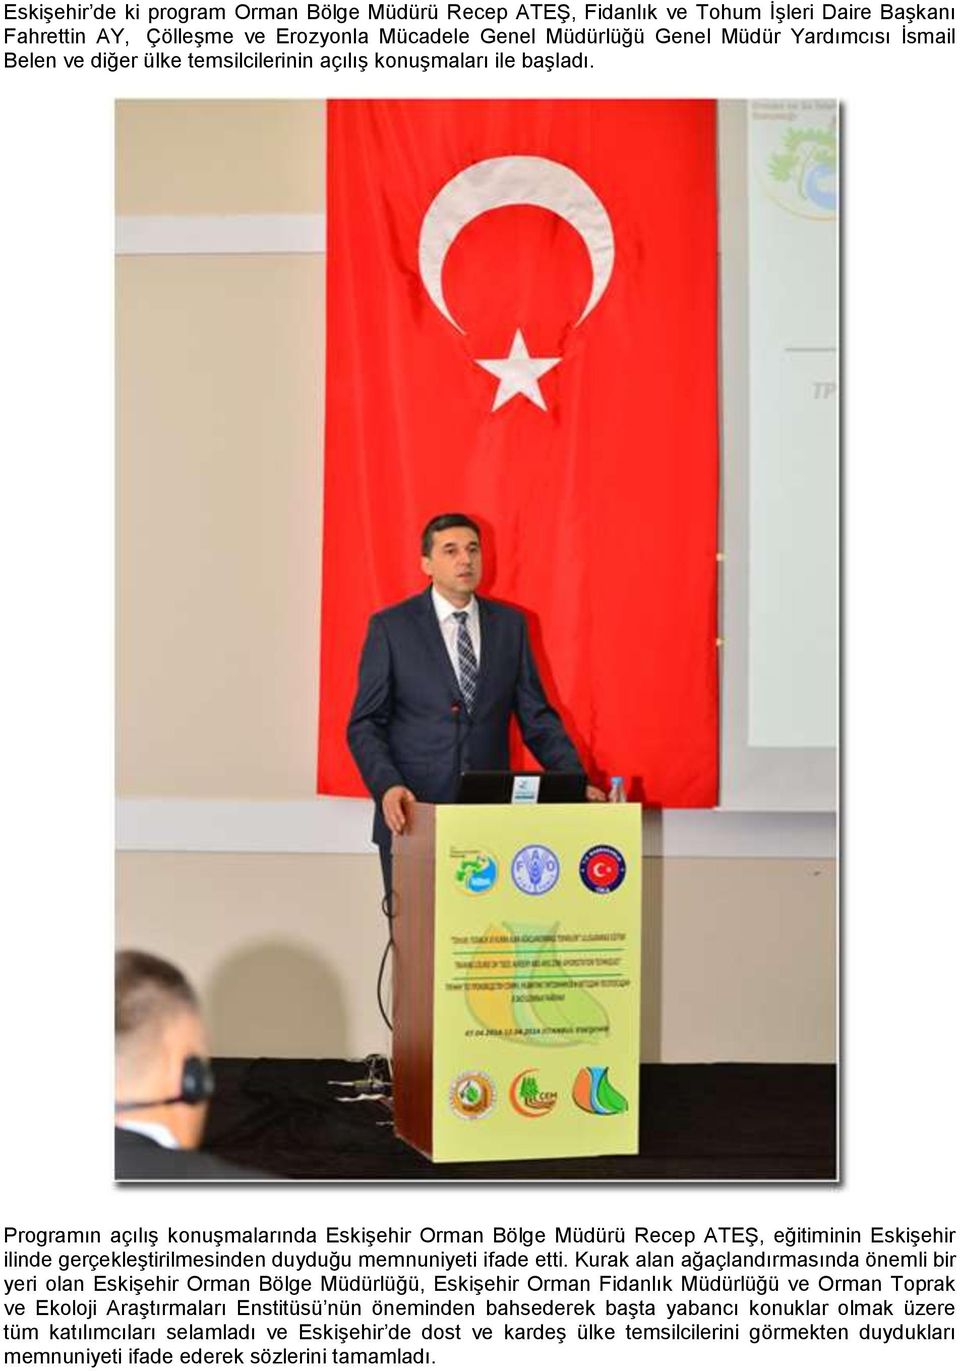 Programın açılış konuşmalarında Eskişehir Orman Bölge Müdürü Recep ATEŞ, eğitiminin Eskişehir ilinde gerçekleştirilmesinden duyduğu memnuniyeti ifade etti.